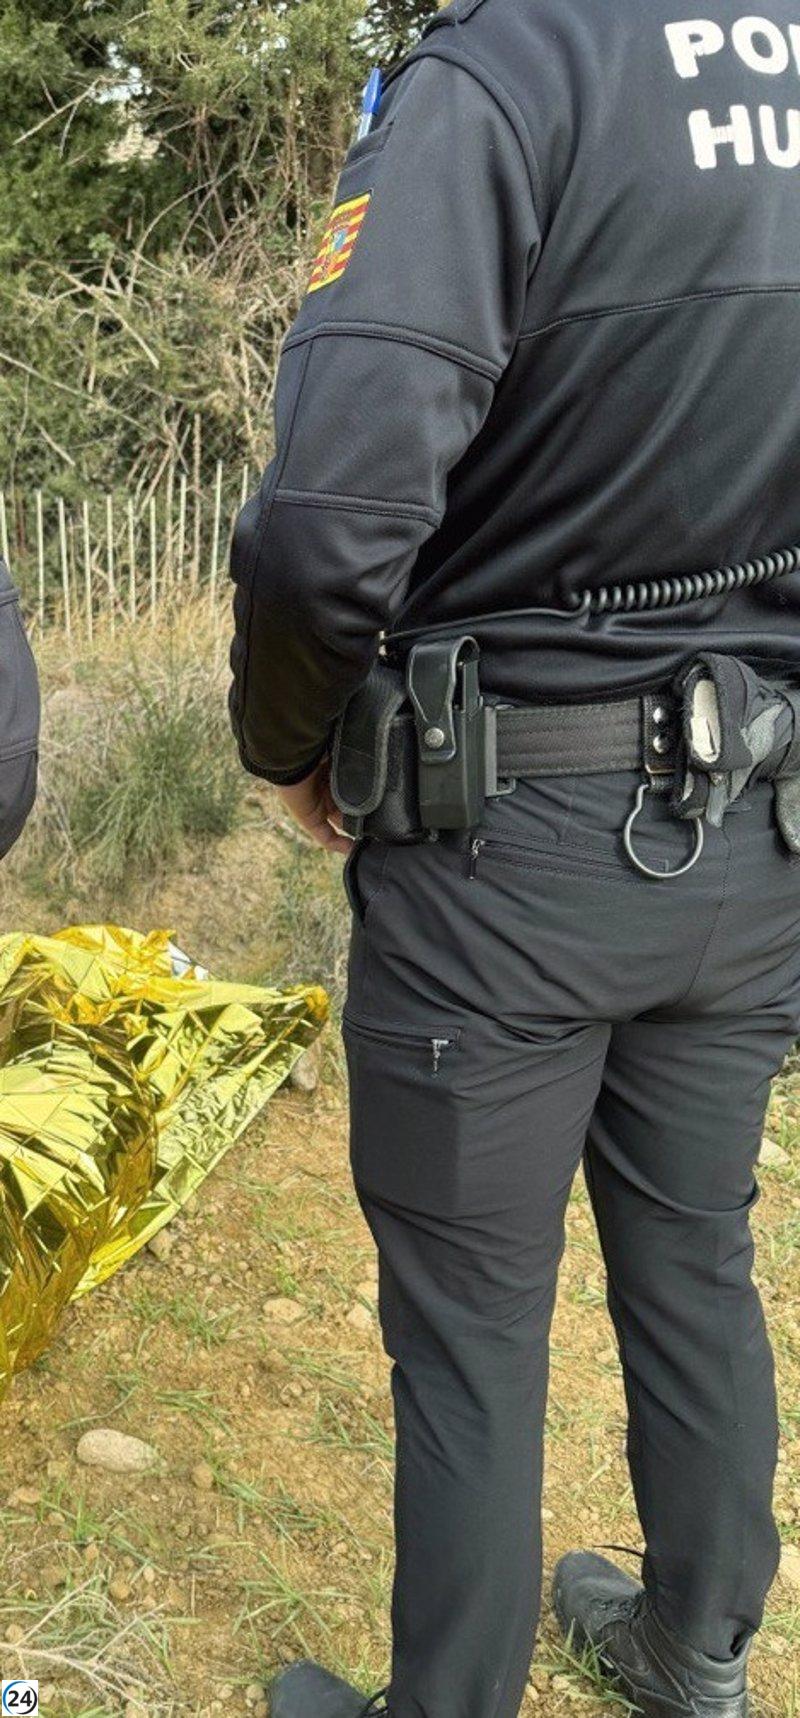 Joven fugado de centro de internamiento en Huesca capturado después de esconderse en un tubo